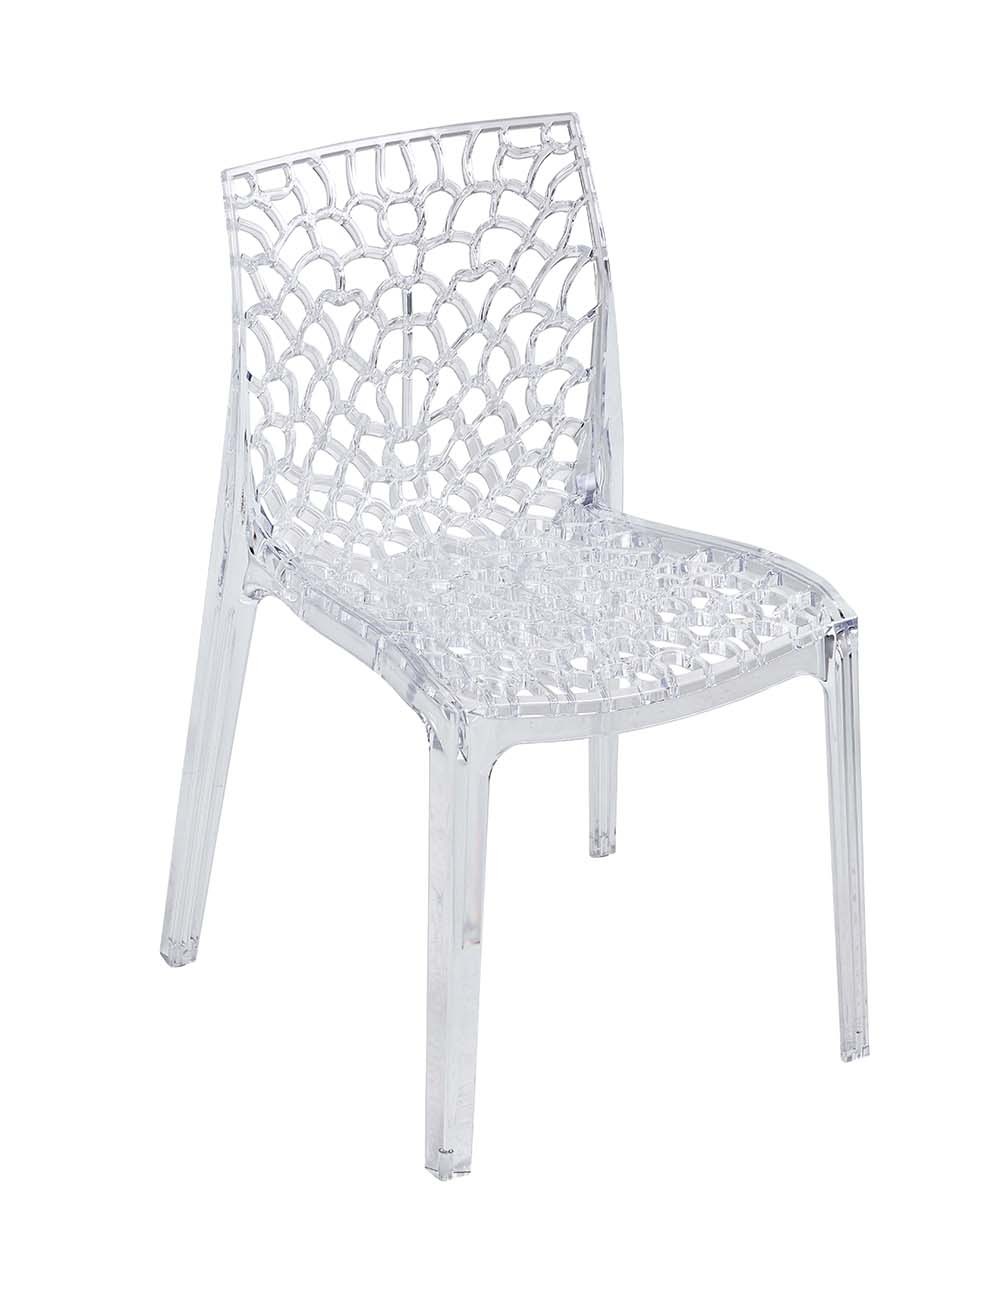 Chaise plastique d'extérieur : Devis sur Techni-Contact - Chaise plastique  de collectivité